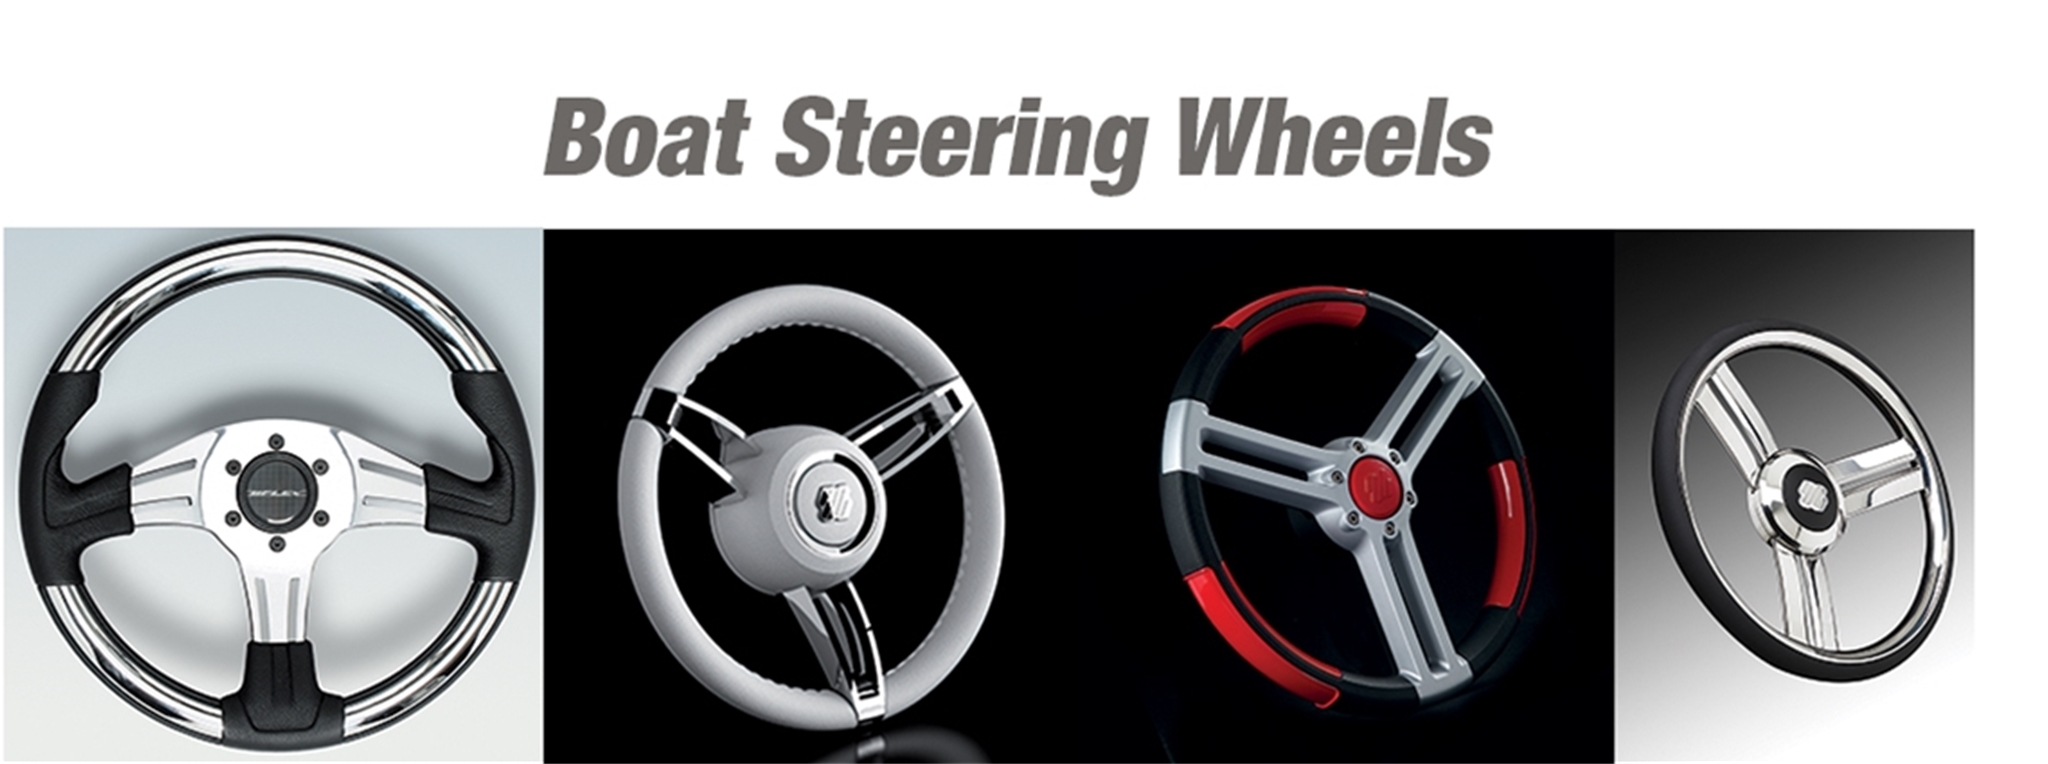 Boat Steering Wheels